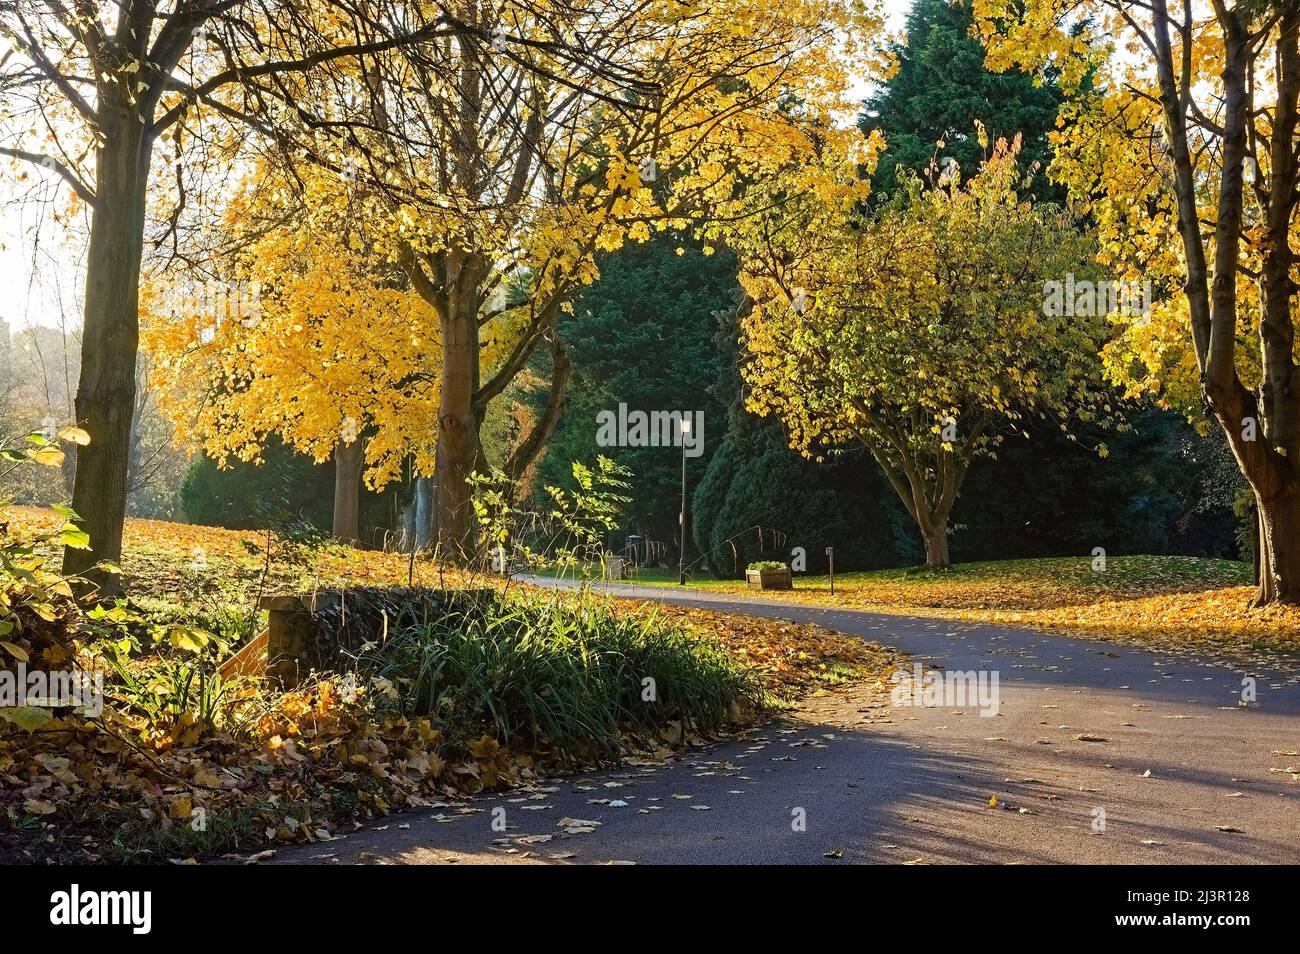 Eine schmale Straße, die sich im Herbst durch einen bewaldeten Park oder Friedhof schlängelt Stockfoto